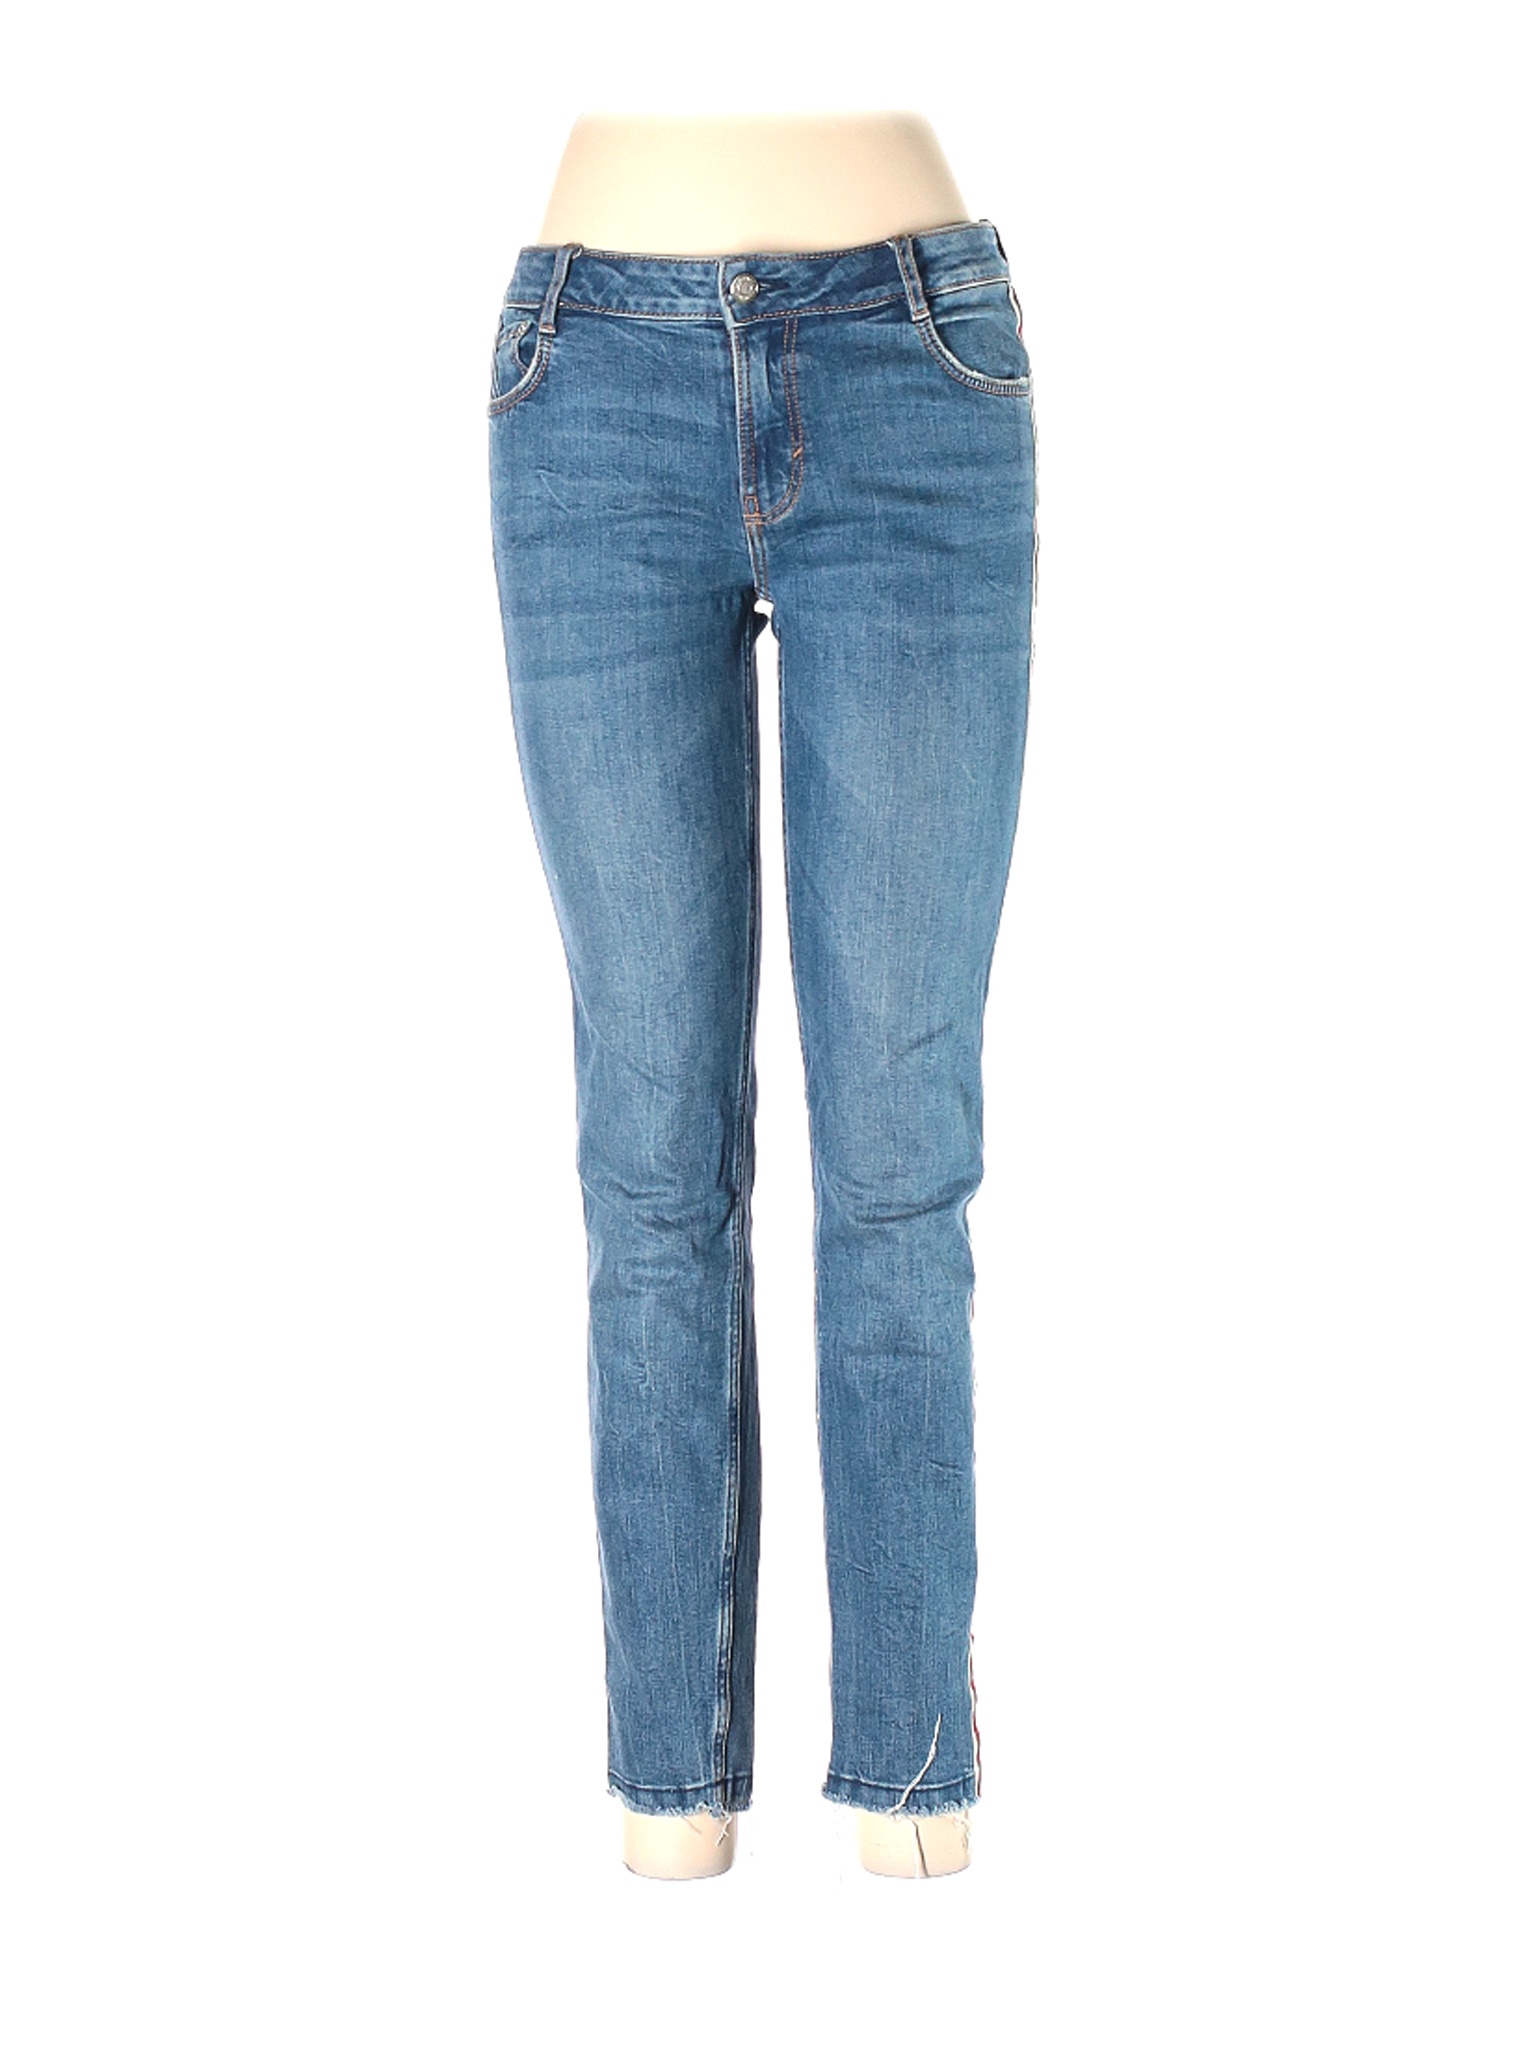 Trafaluc by Zara Women Blue Jeans 8 | eBay